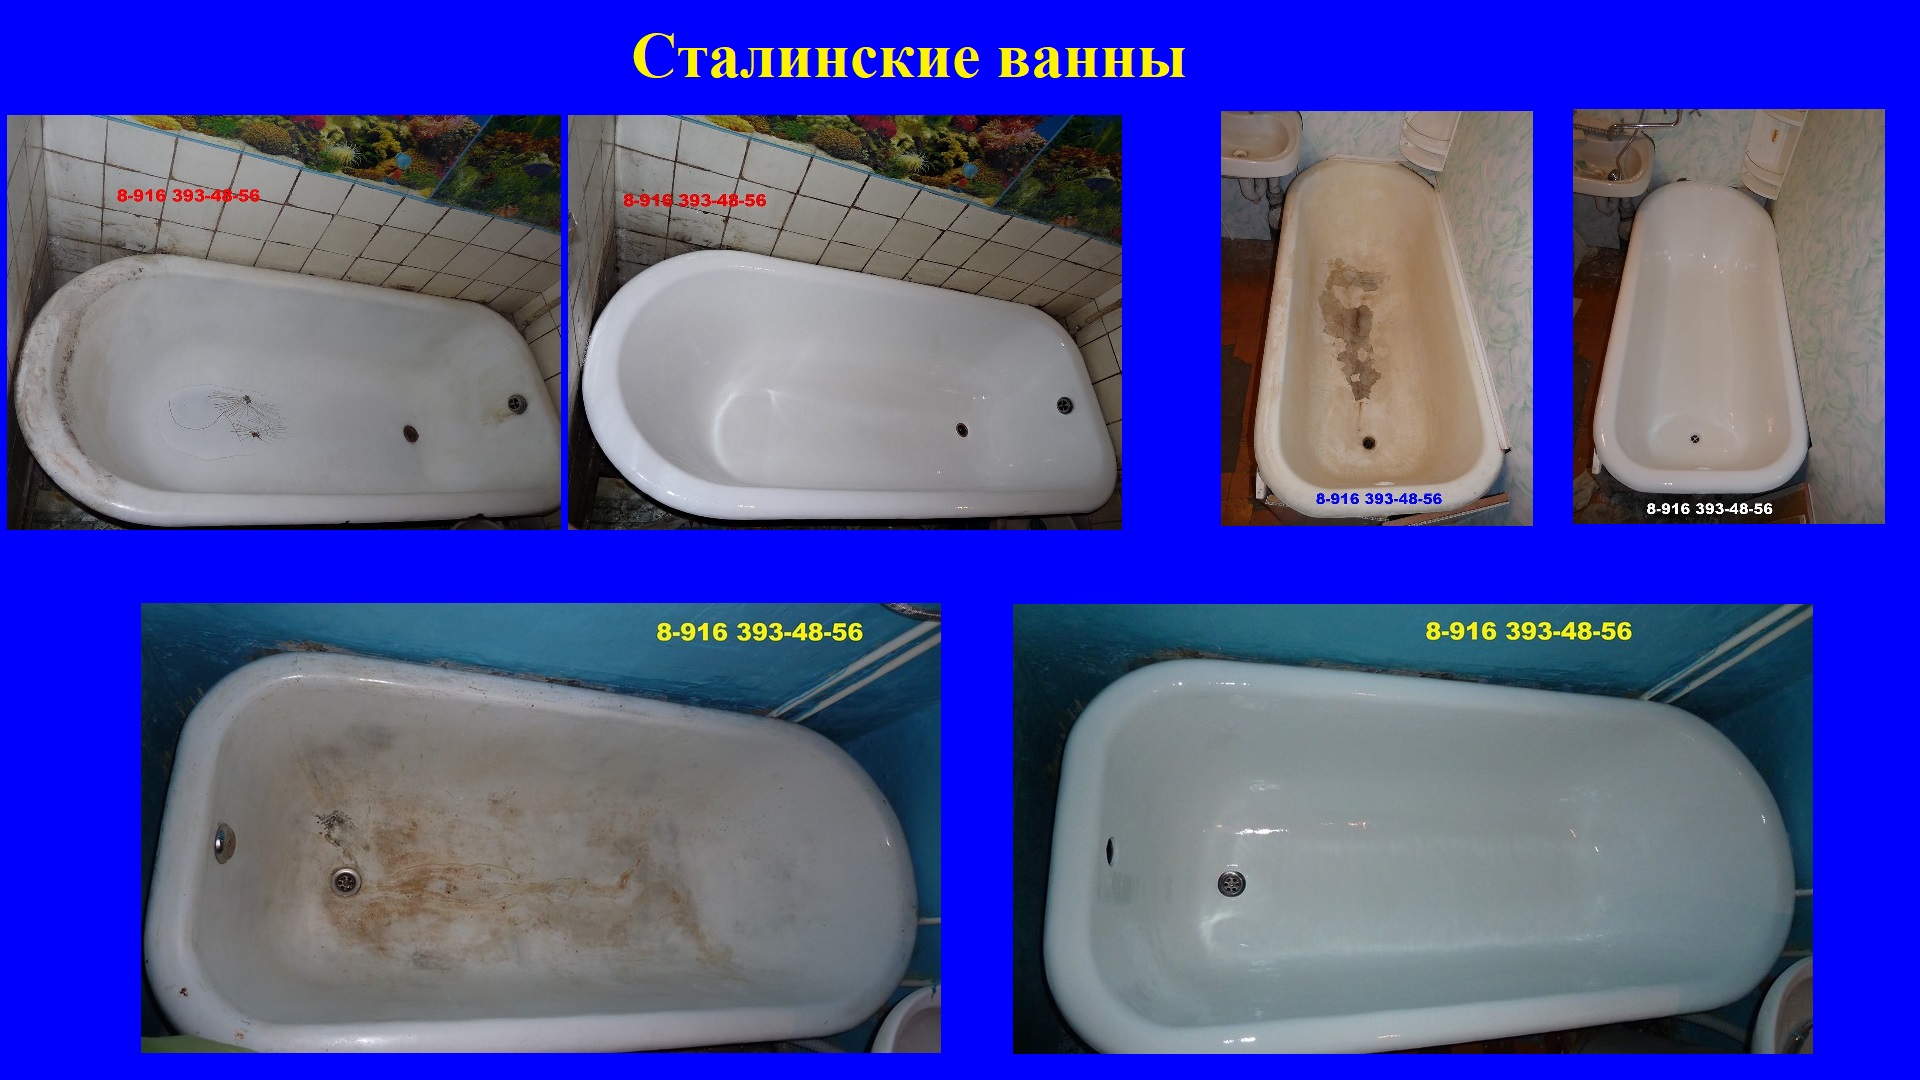 Реставрация ванны телефон. Эмалировка чугунной ванны. Эмалировка ванны в Москве. Сравнение ванн. Реконструкция ванны чугунной.